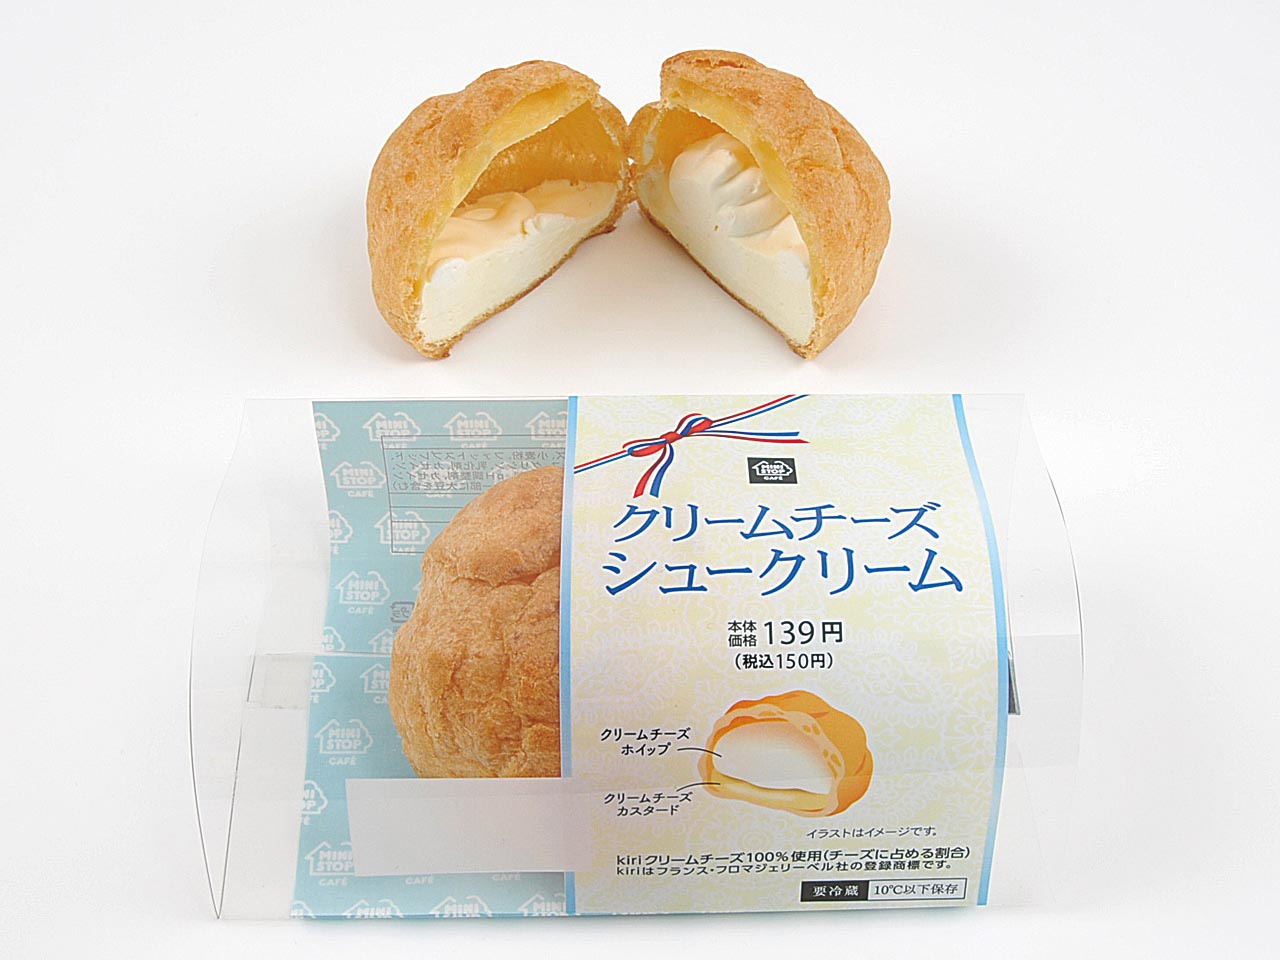 「クリームチーズシュークリーム」150円（税込）。11/13(火)発売